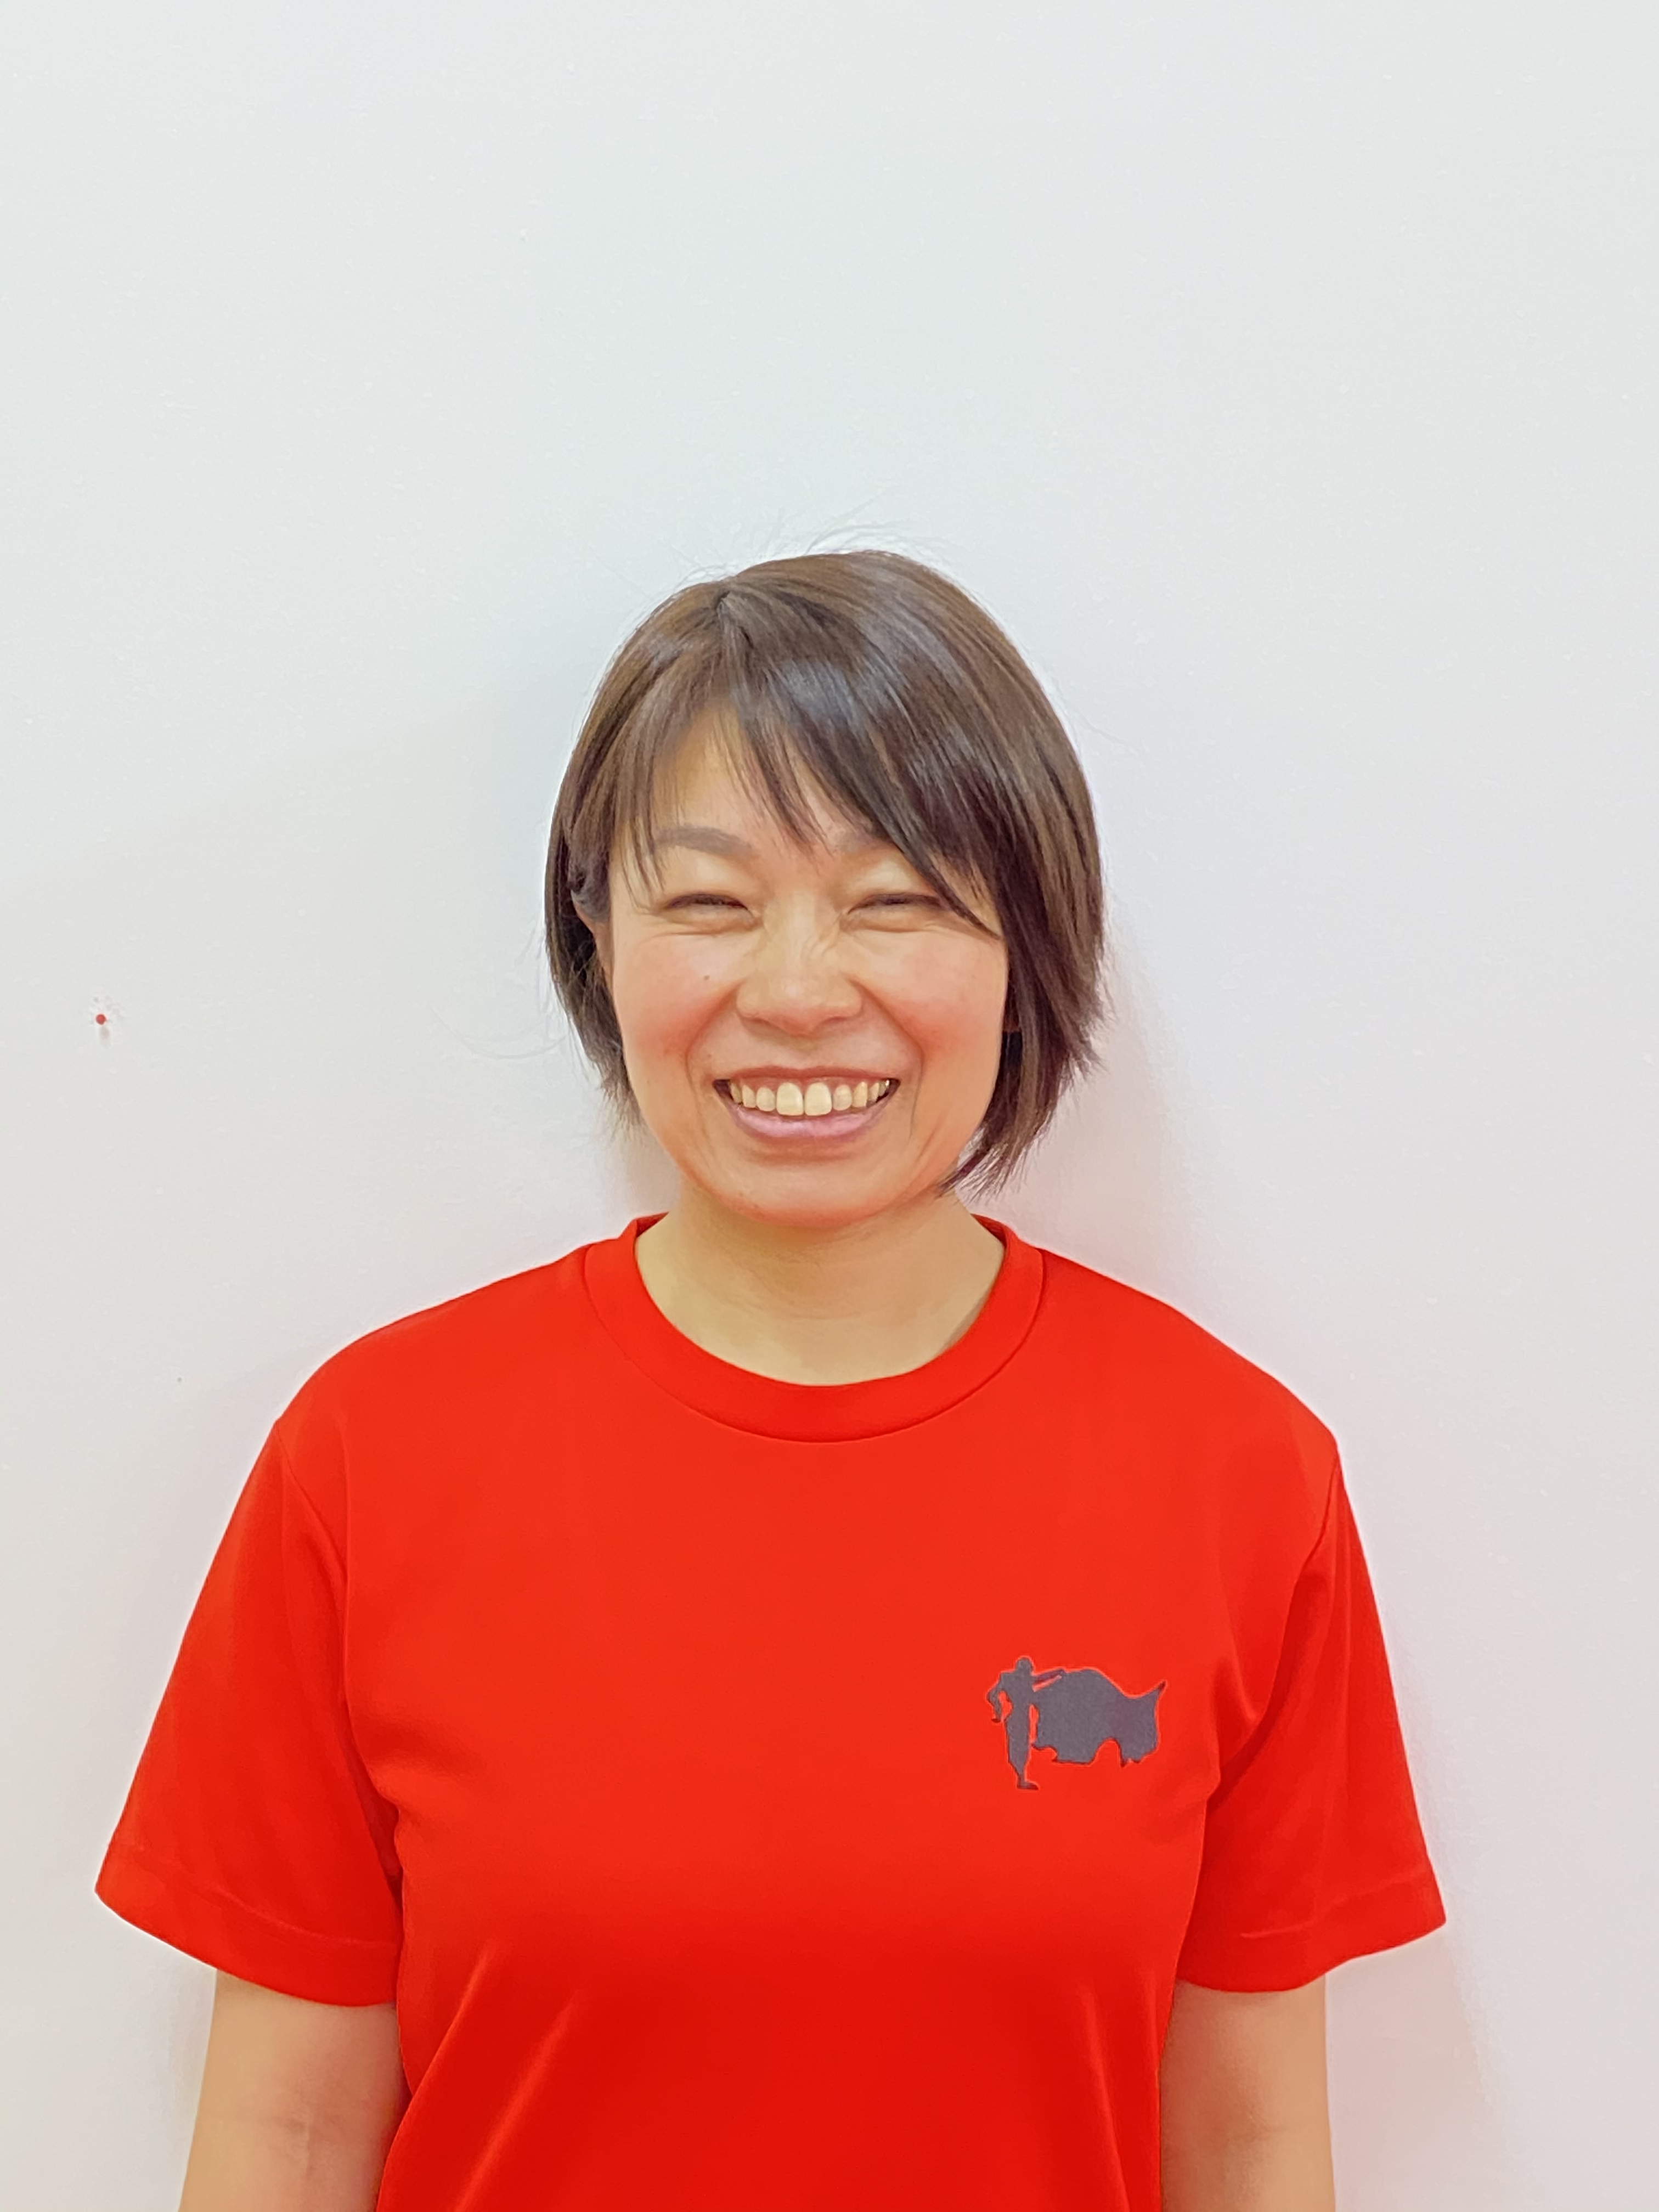 鈴木 佳子 Suzuki Yosiko 名古屋 東京で実績と信頼のパーソナルトレーニングジムマタドール